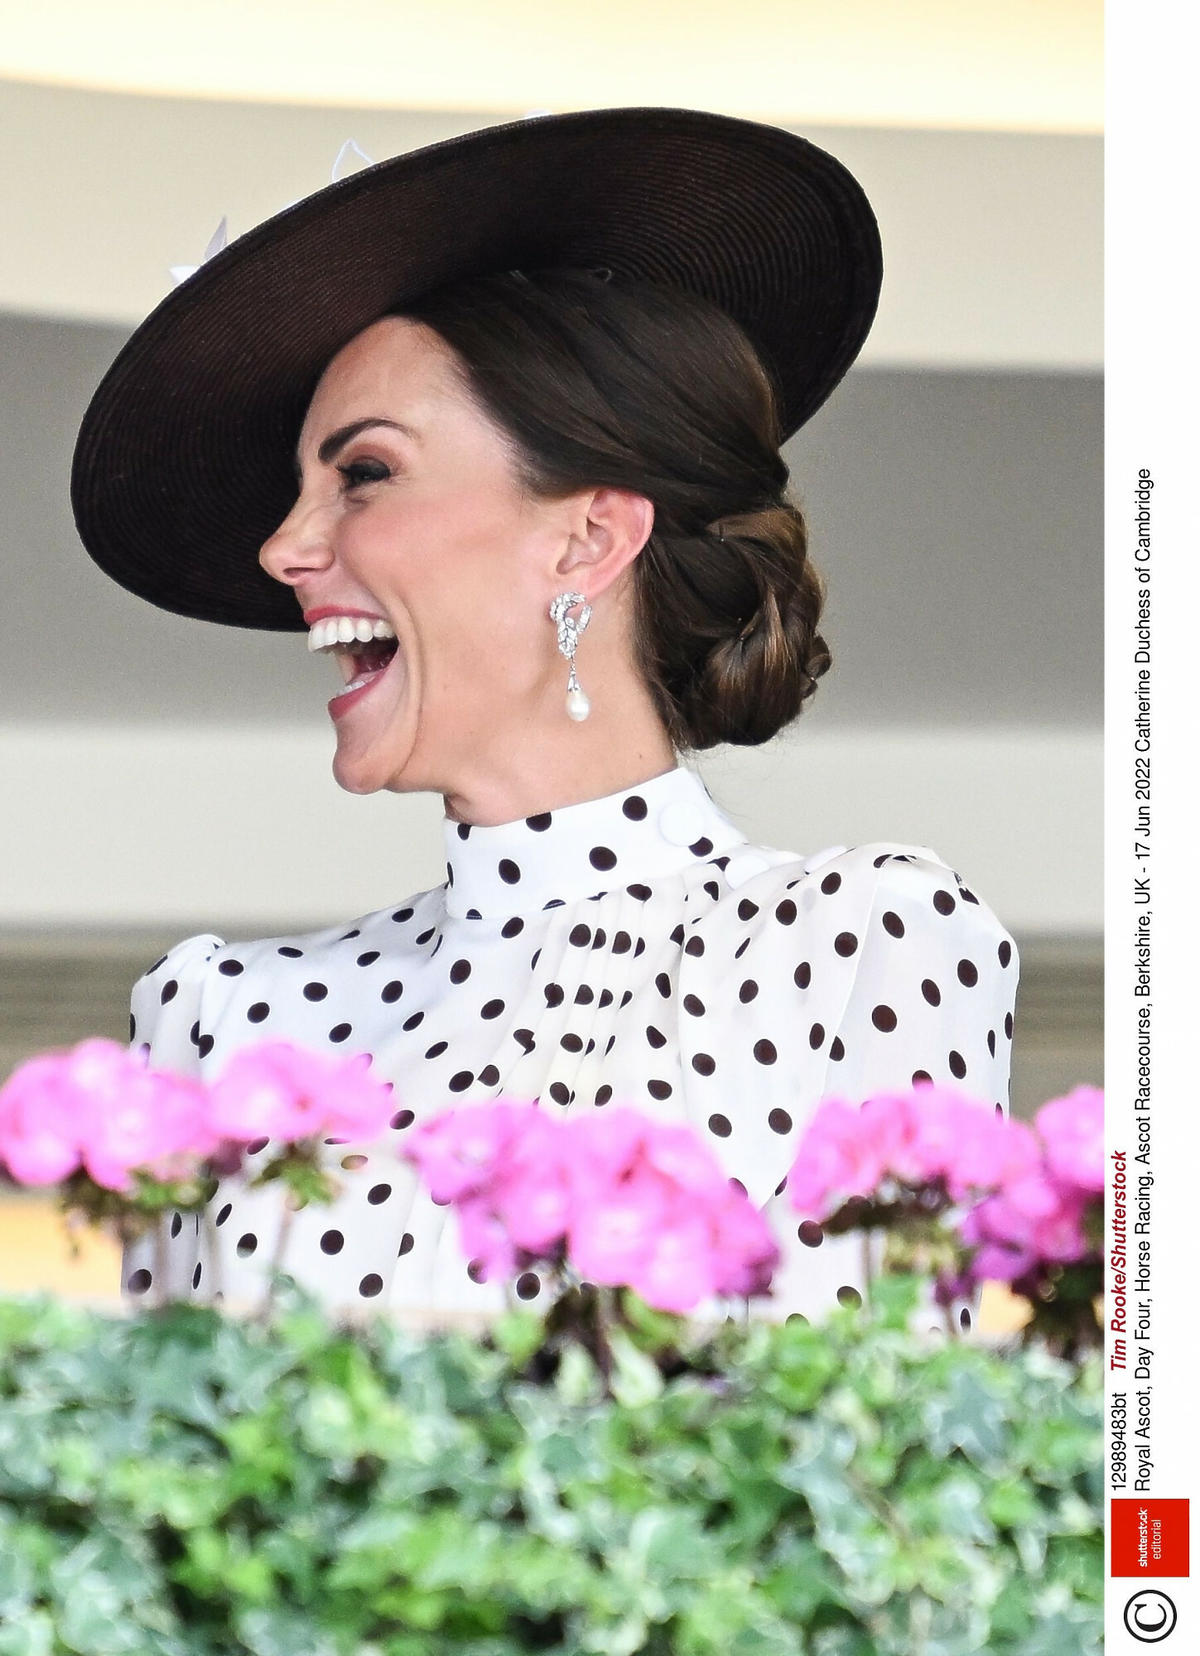 Księżna Kate zachwyciła stylizacją nawiązującą do księżnej Diany